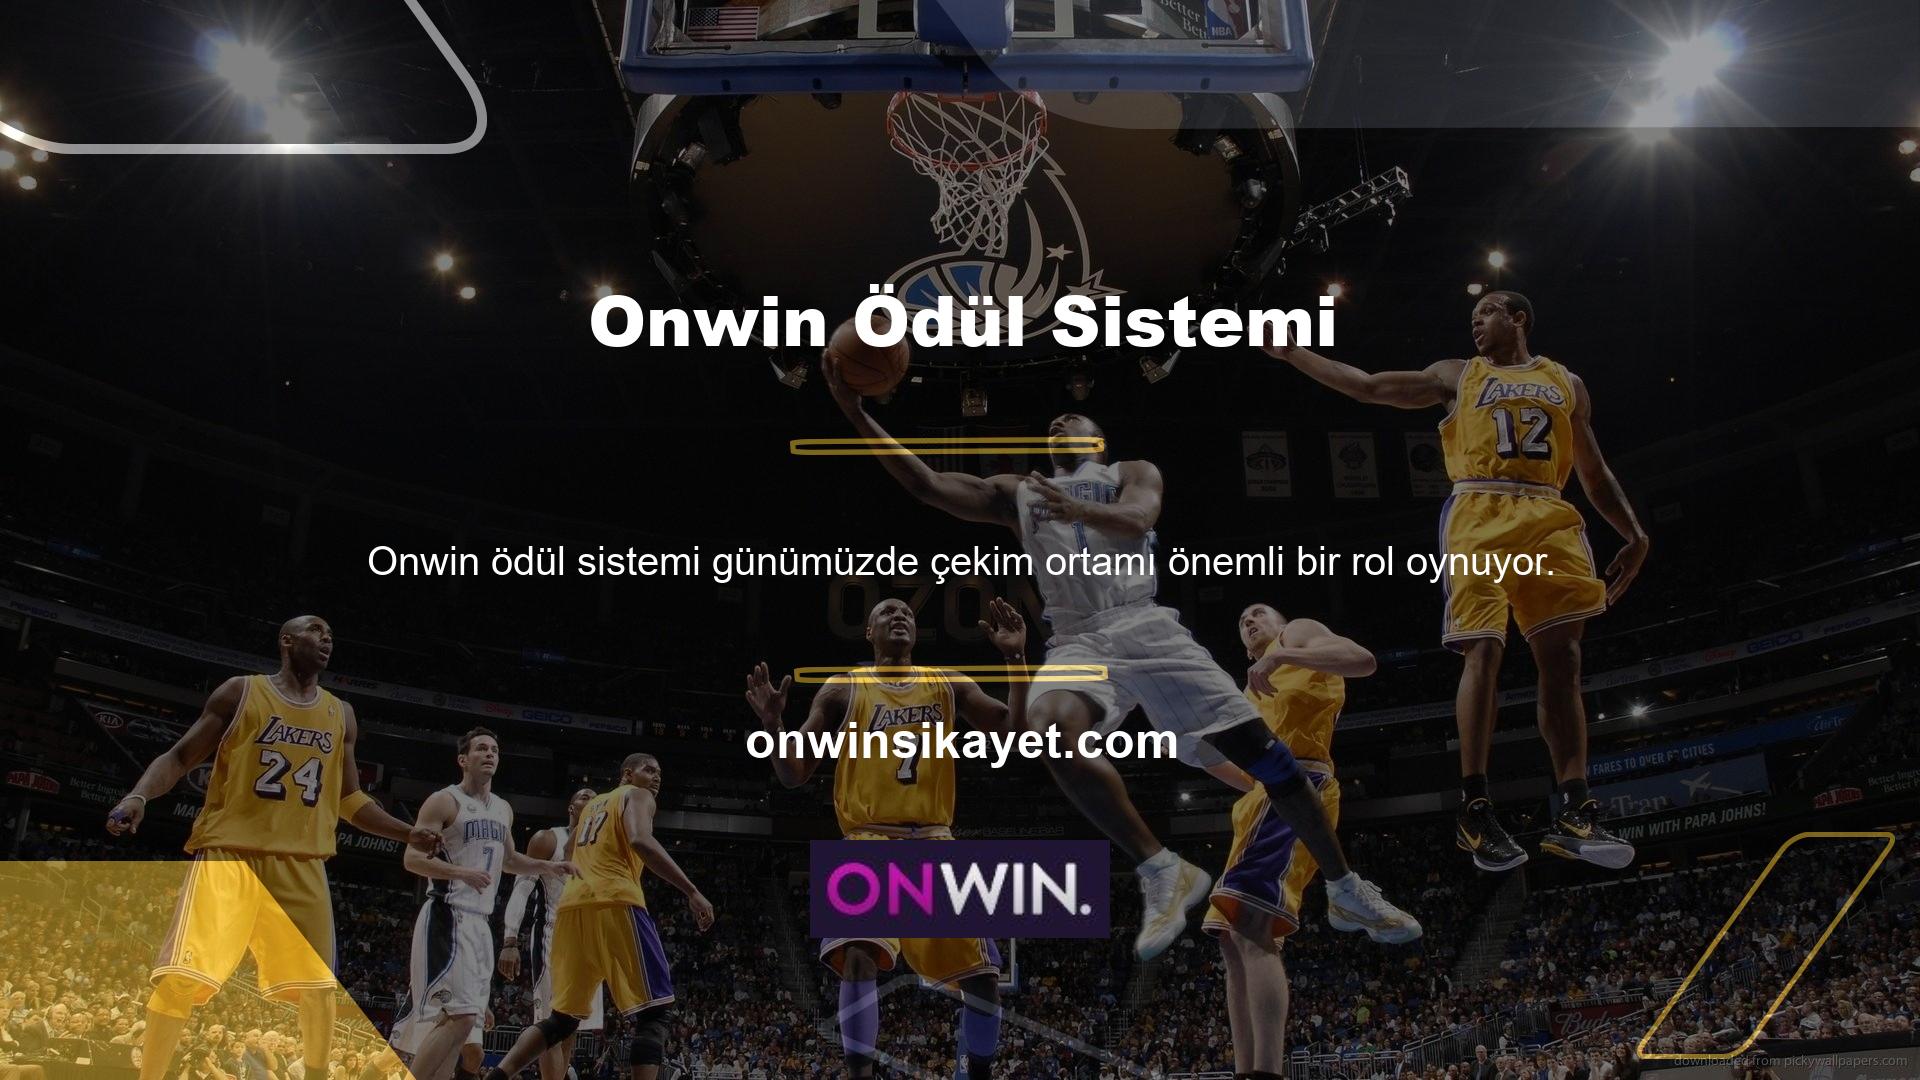 Onwin web sitesinde çok sayıda harika sosyal medya hesabı var